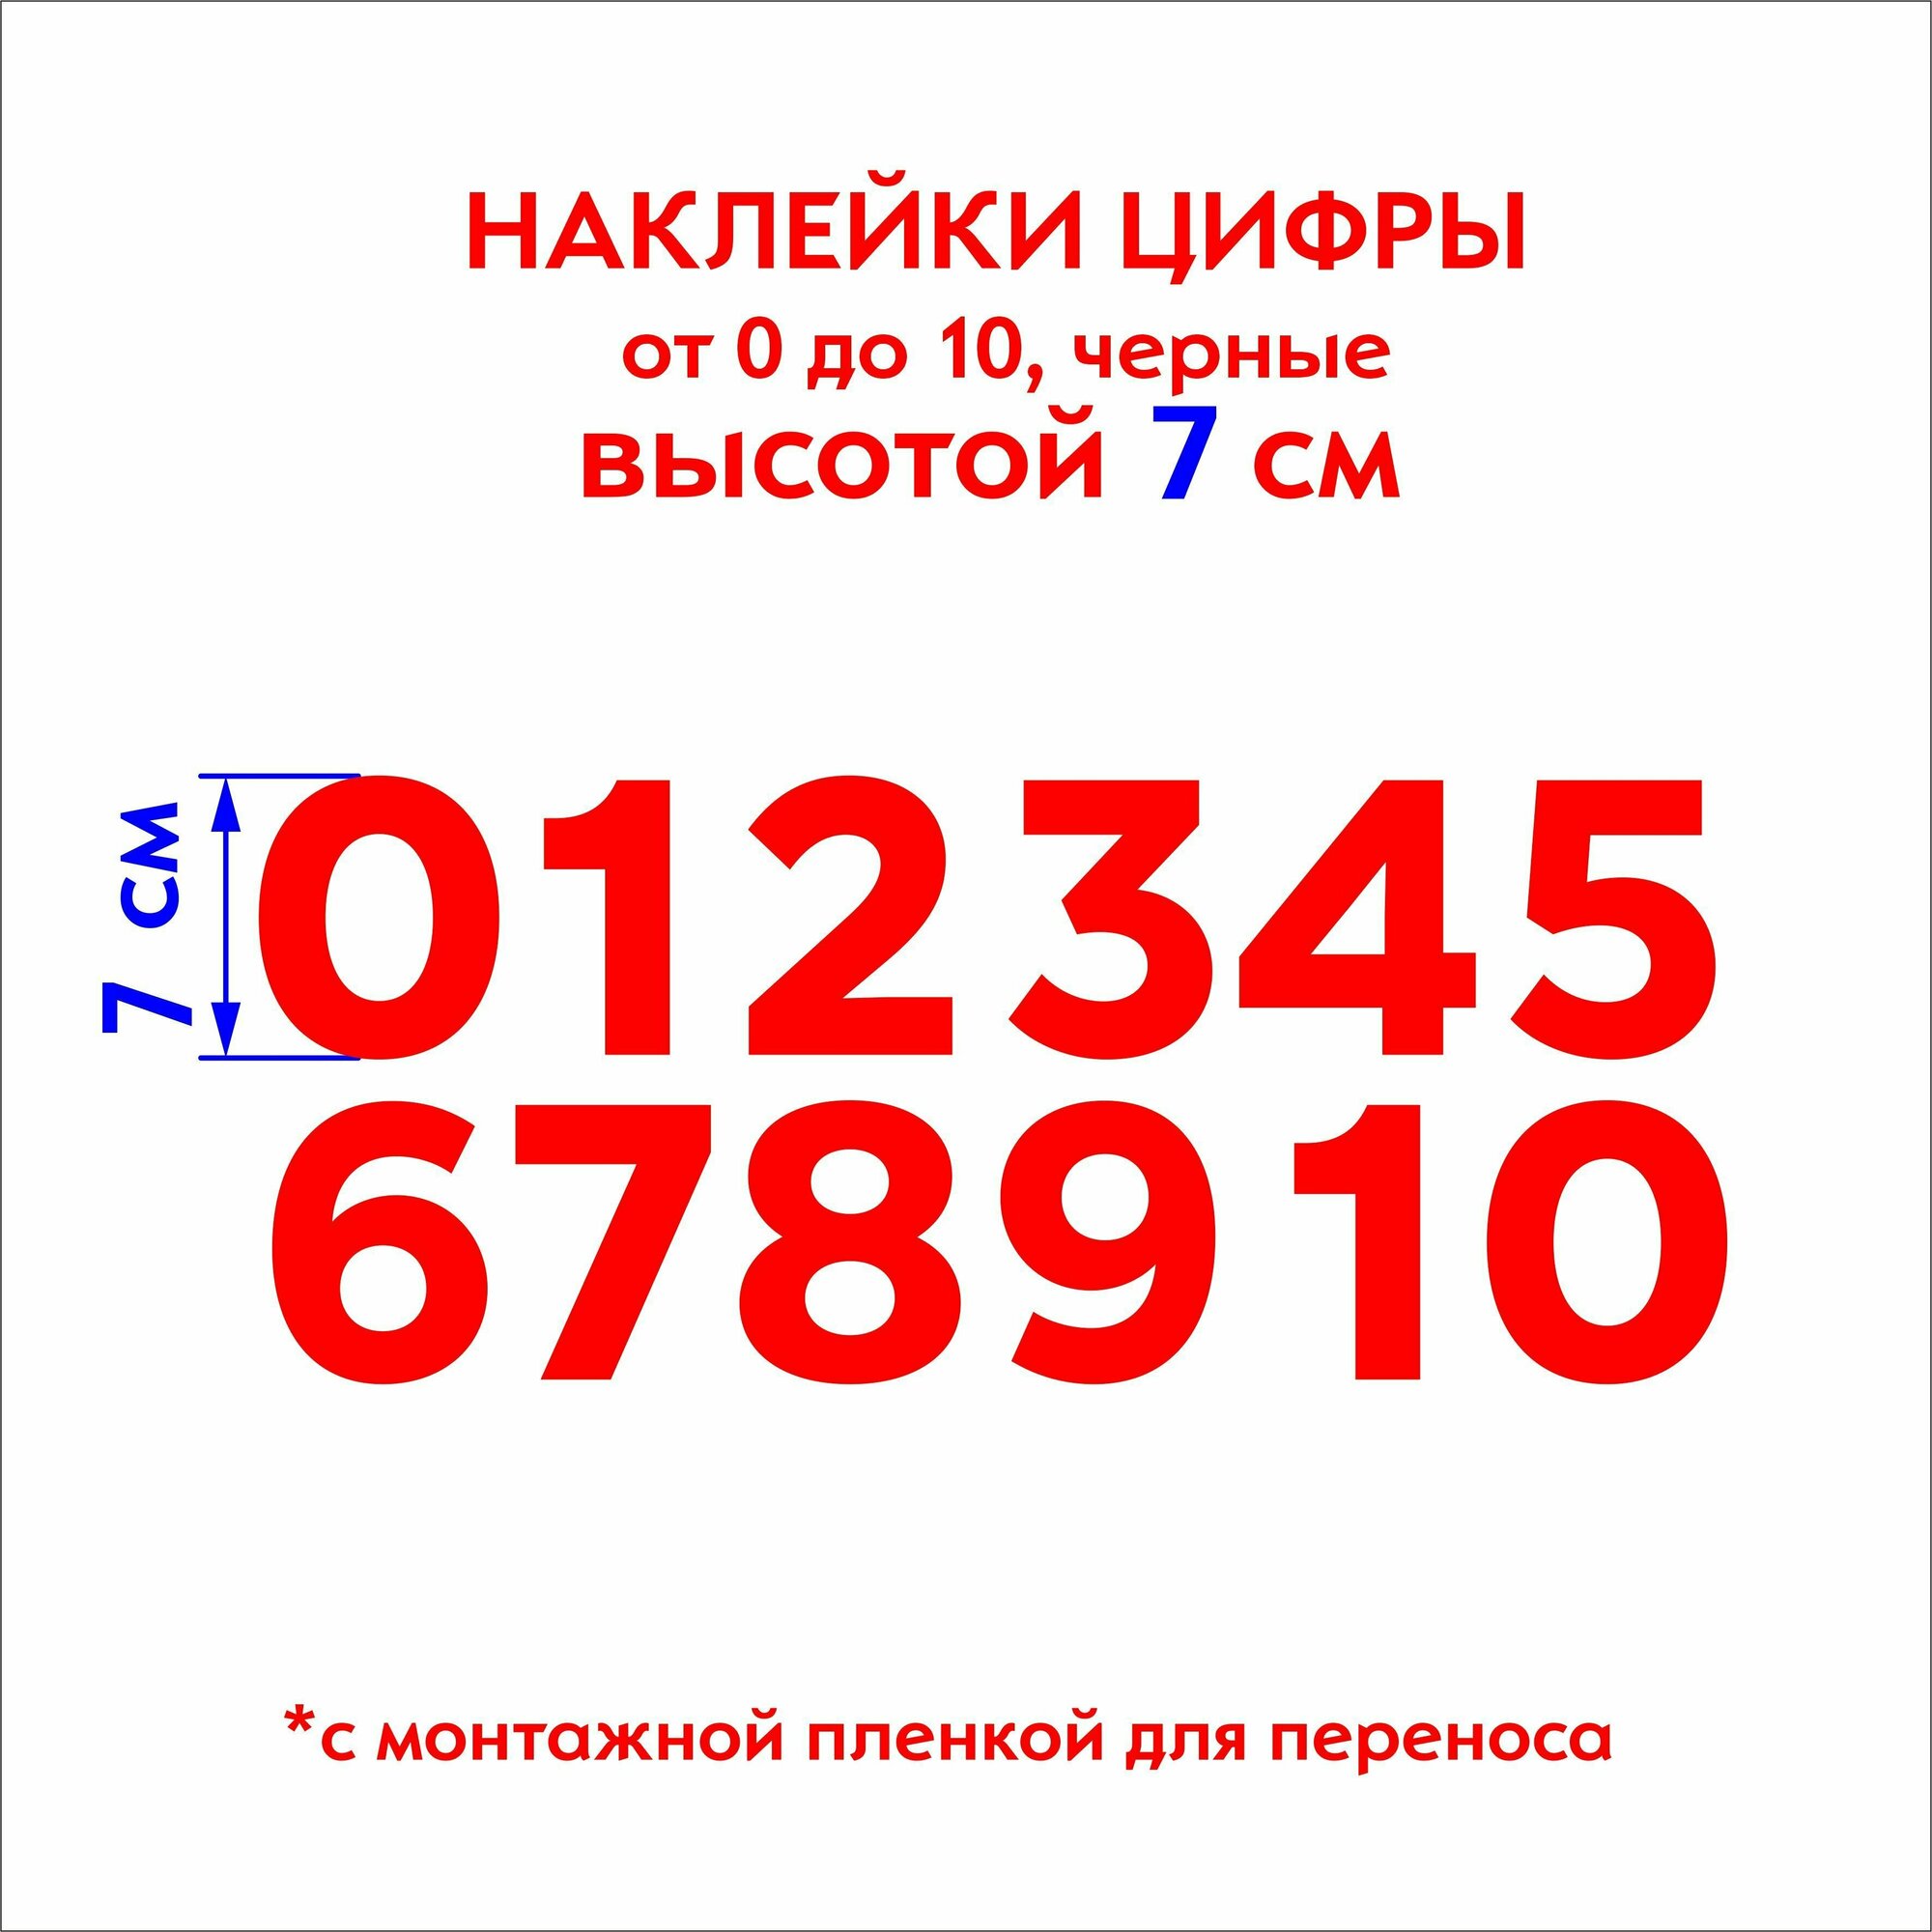 Наклейки цифры (стикеры), наклейка на авто набор цифр, красные, 7 см